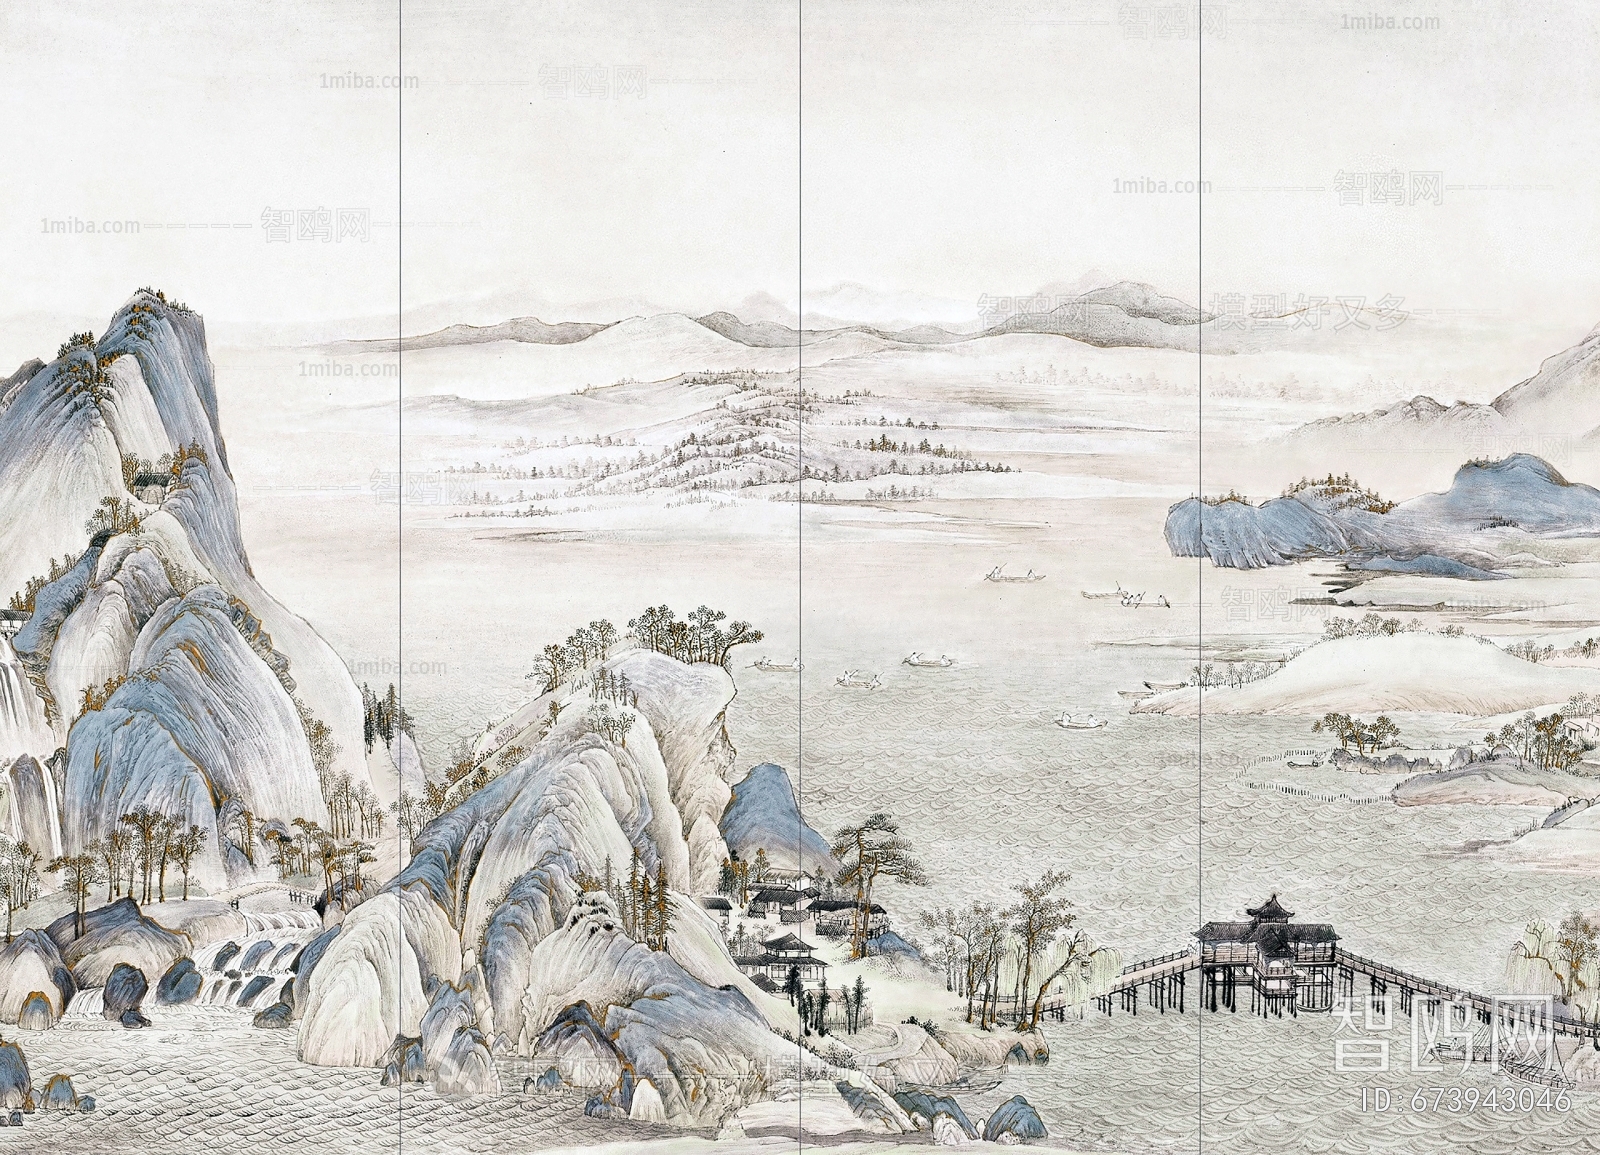 中式新中式壁纸壁画